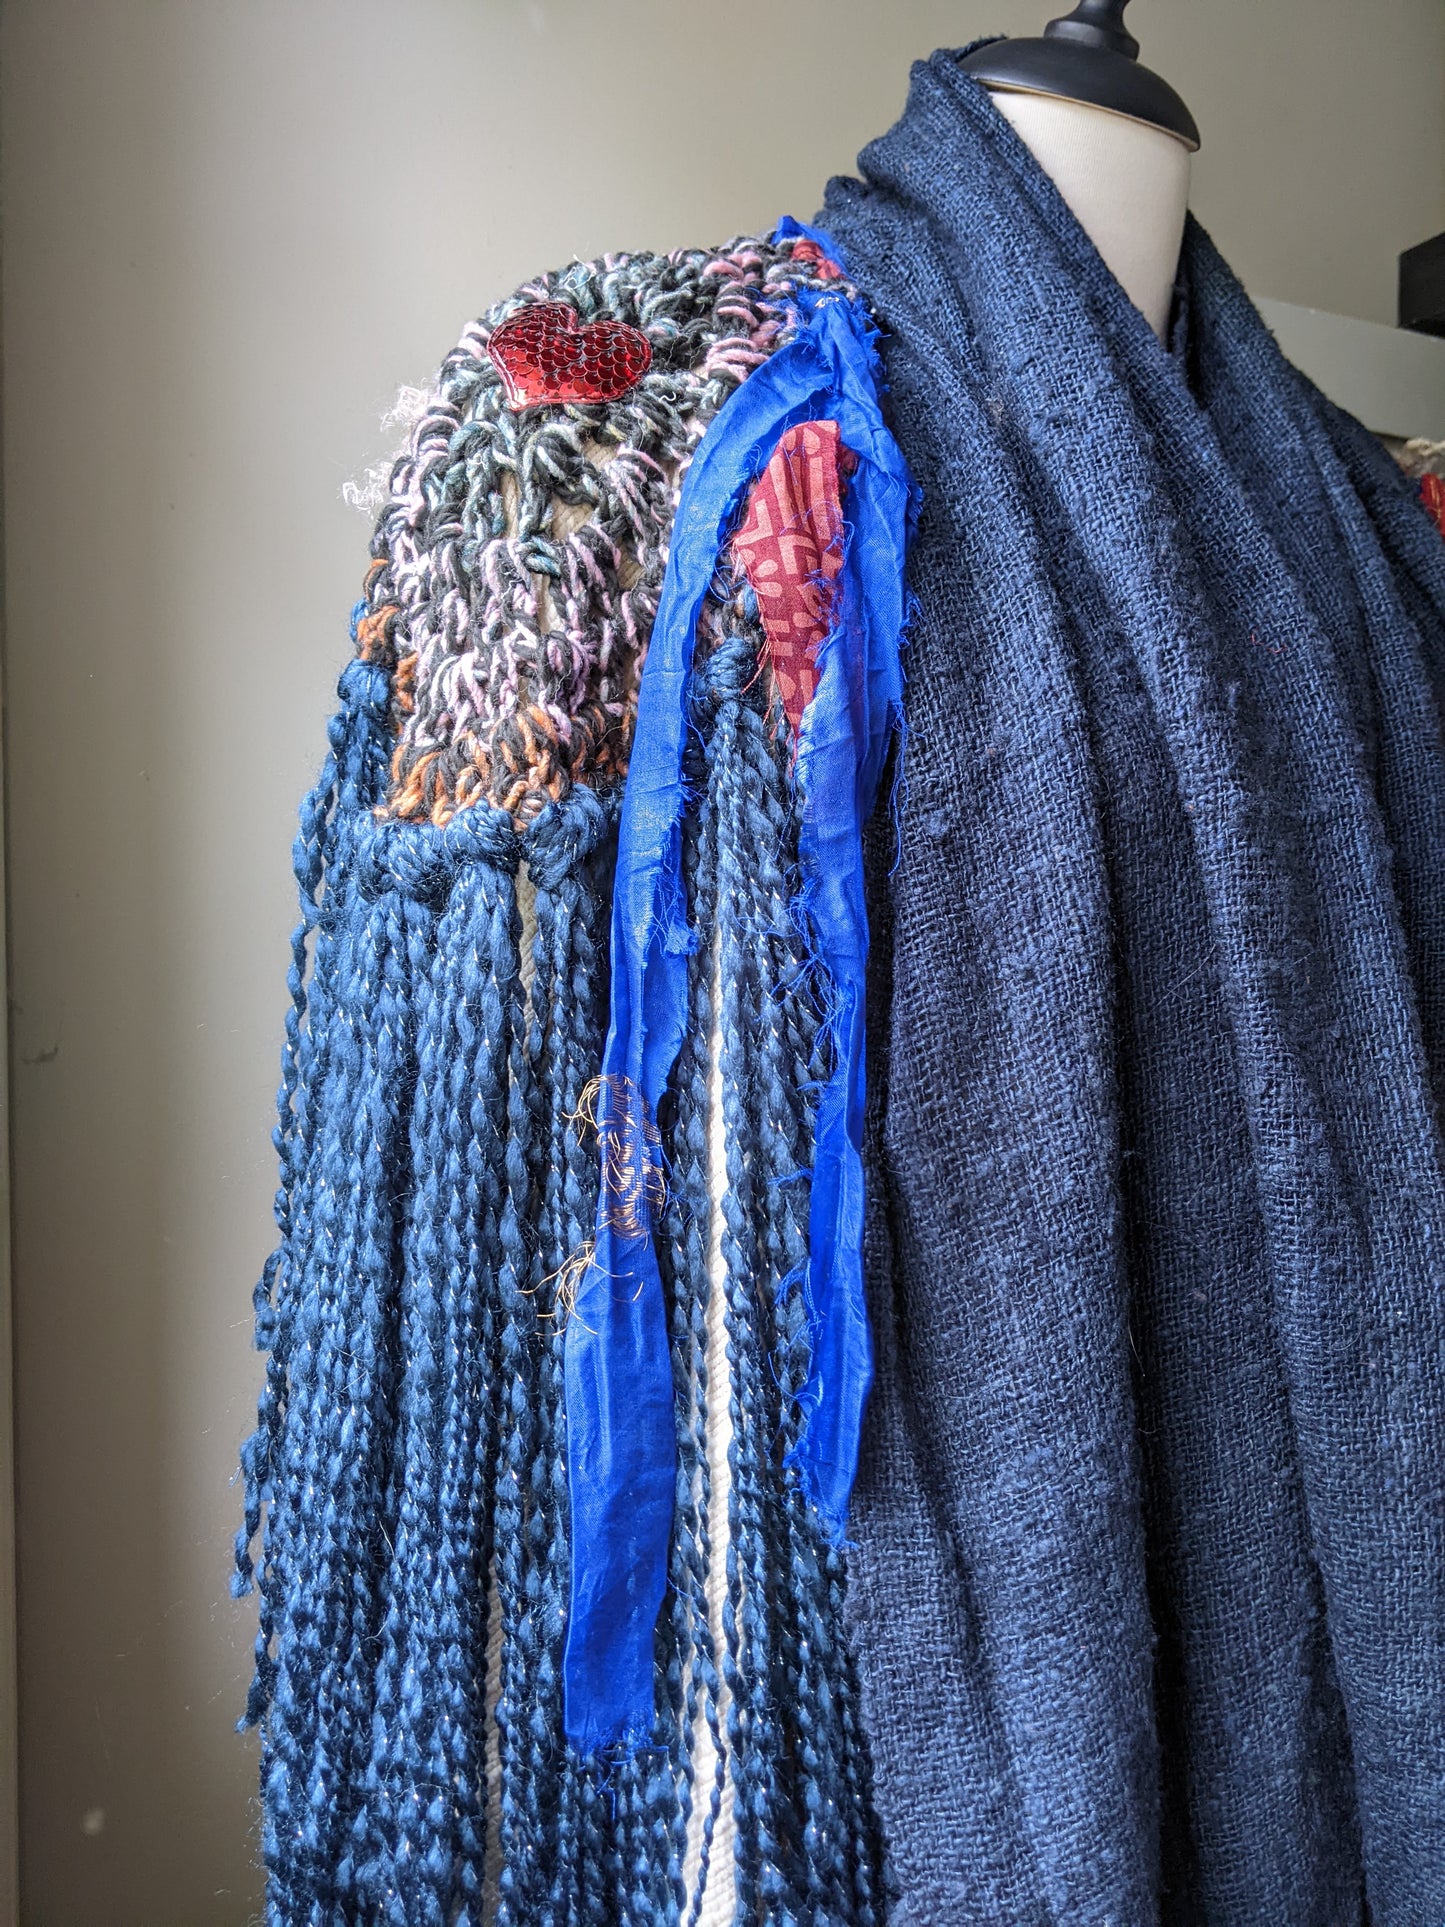 Fiber Festival Freeform Crochet, Knit Handspun, and Woven Boho Shredded Wings Wrap